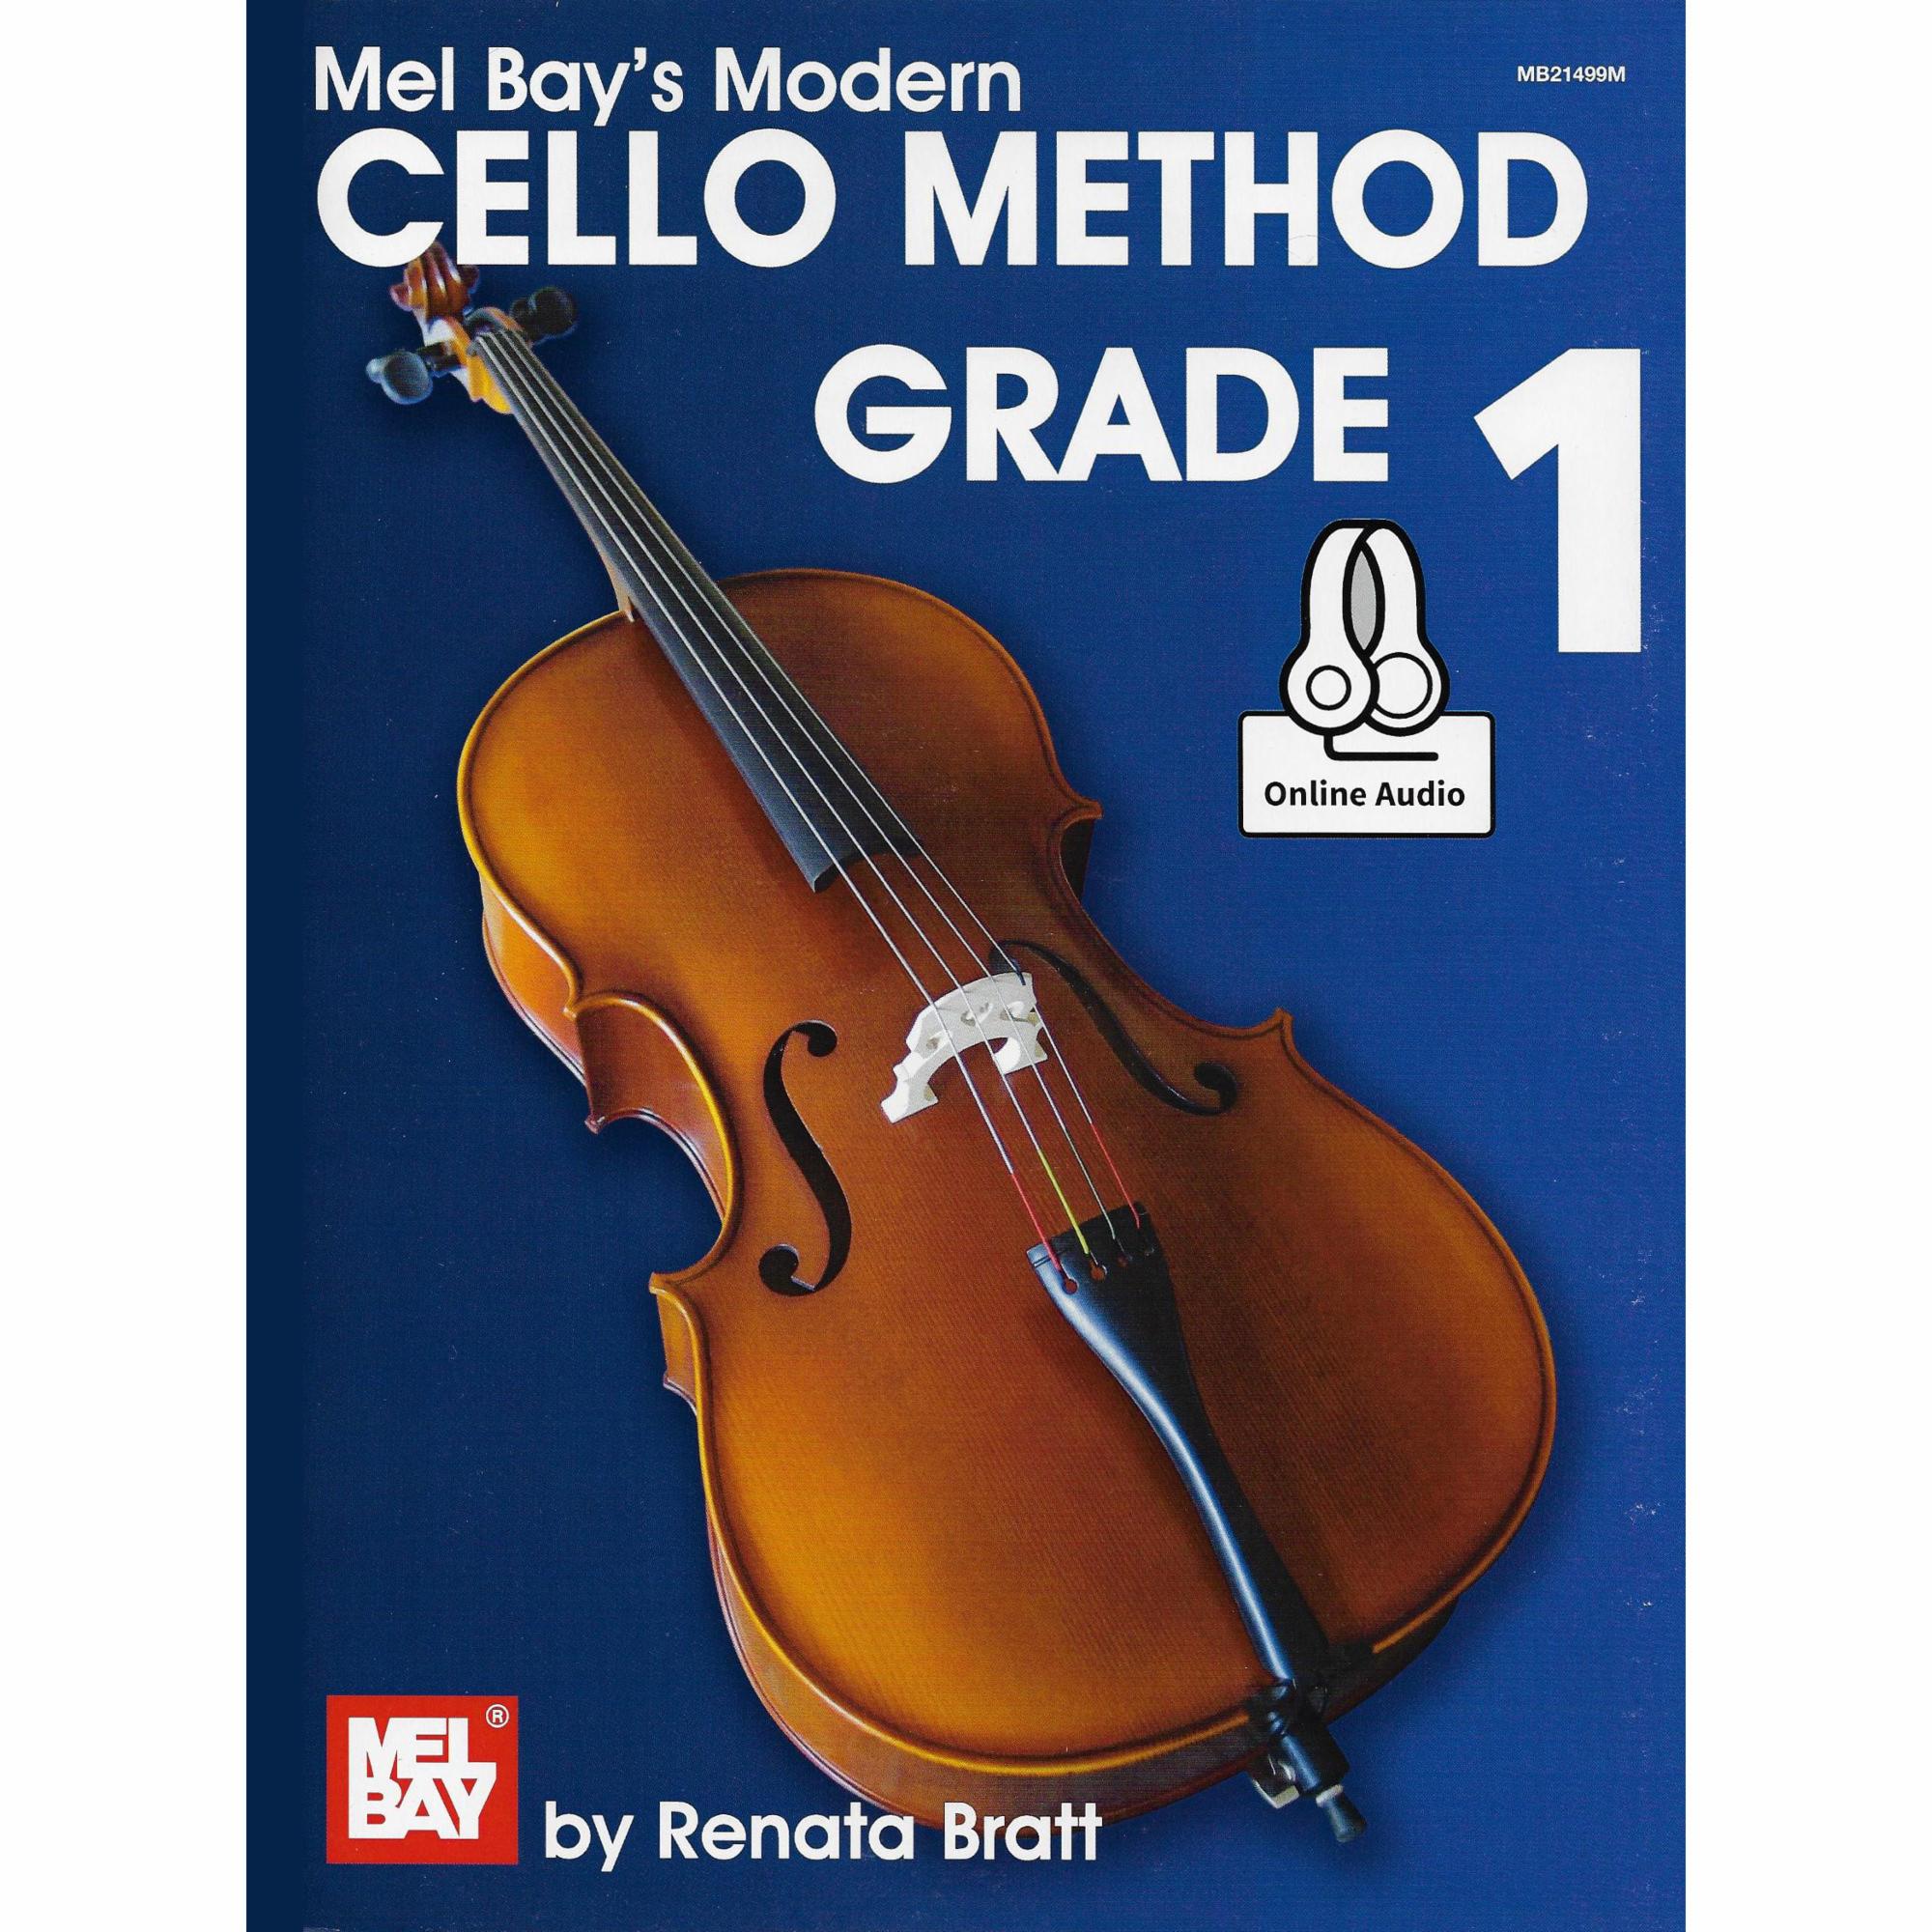 Mel Bay's Modern Cello Method, Grade 1